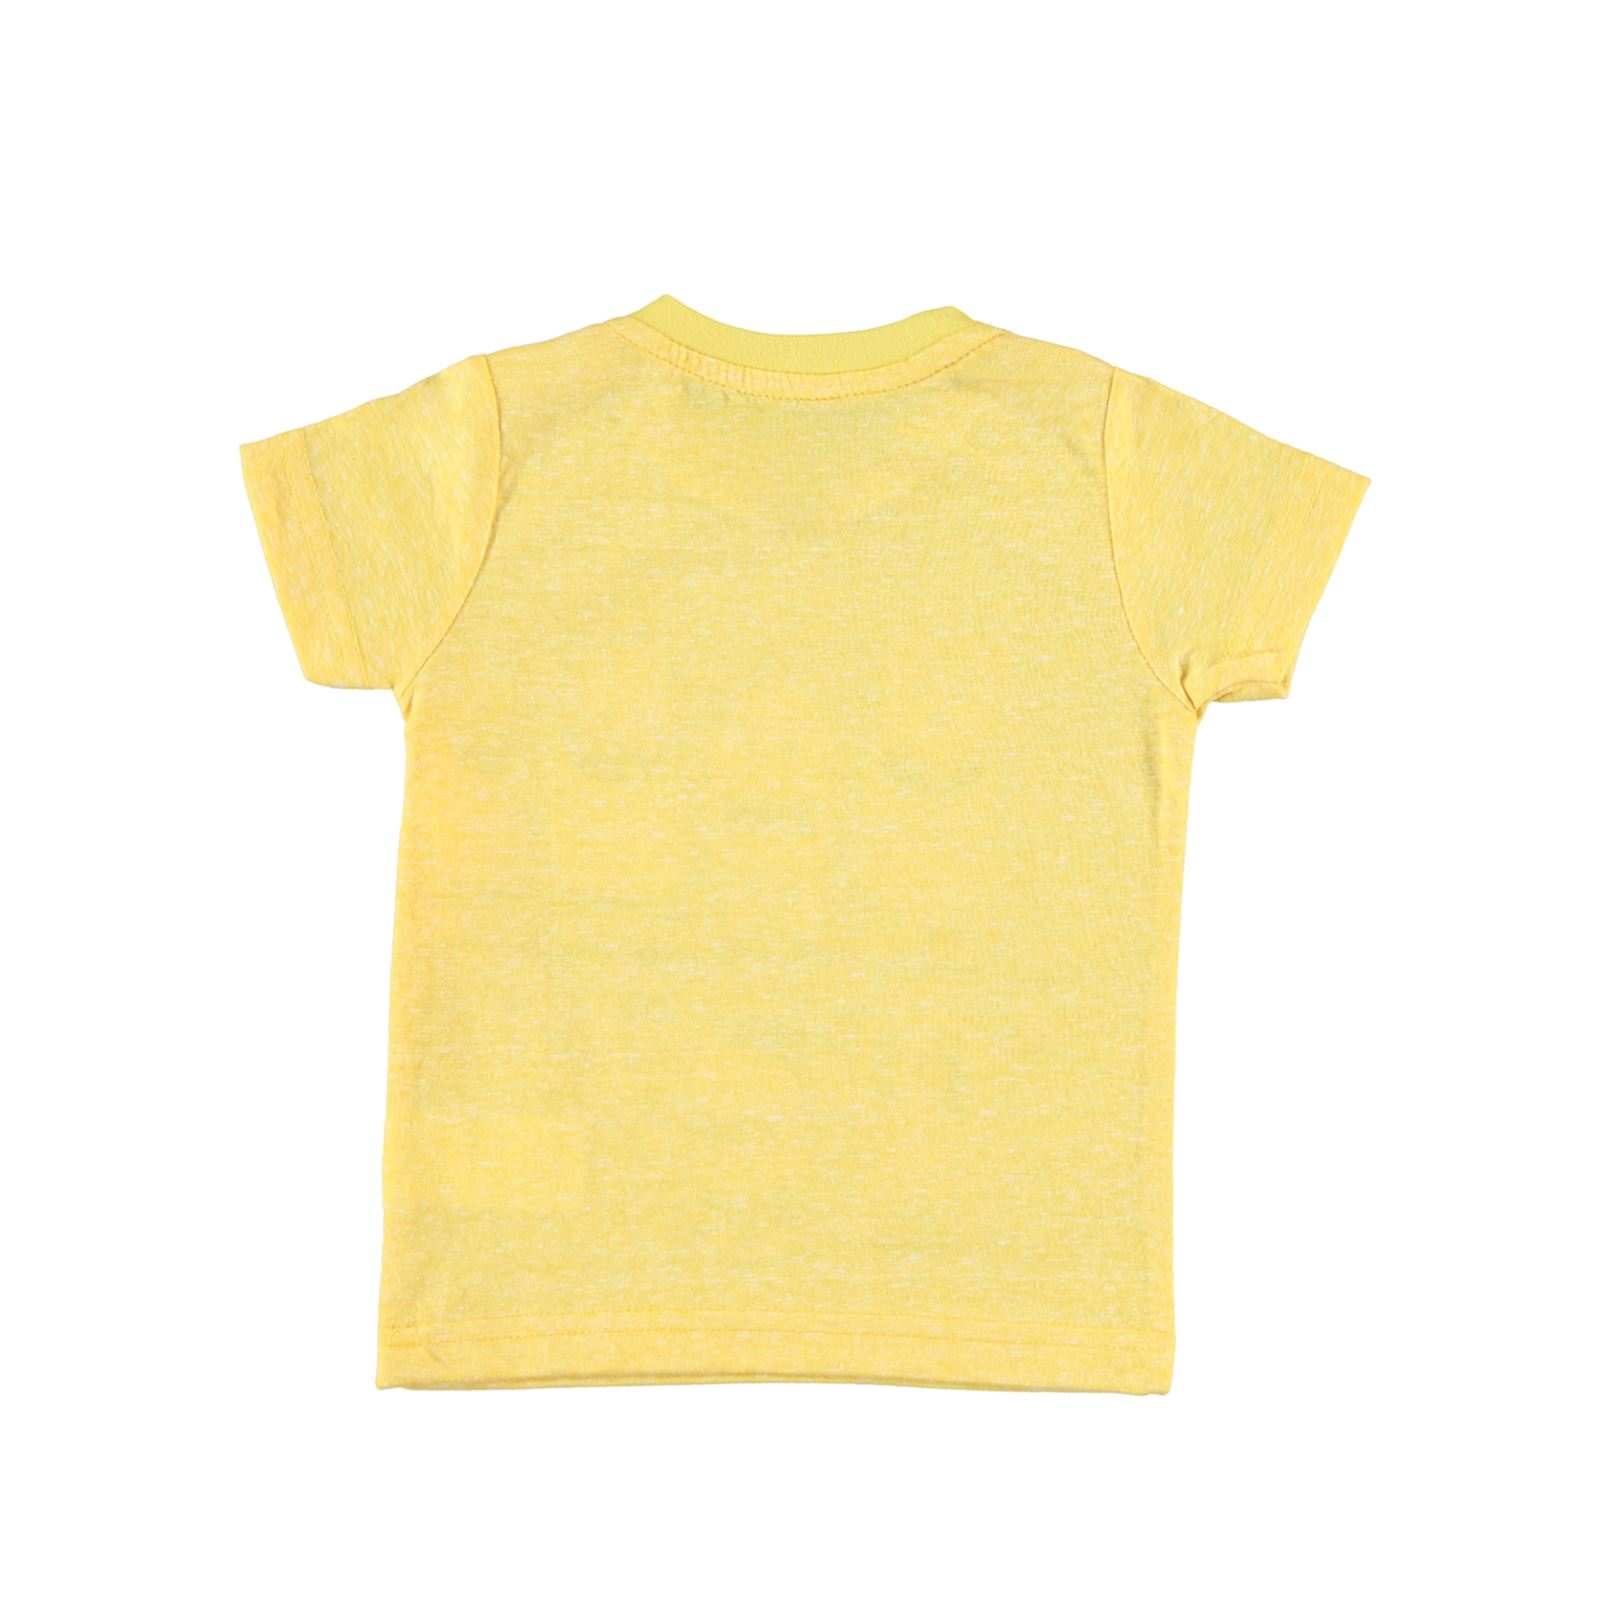 Kujju Erkek Bebek Tişört 6-18 Ay Sarı